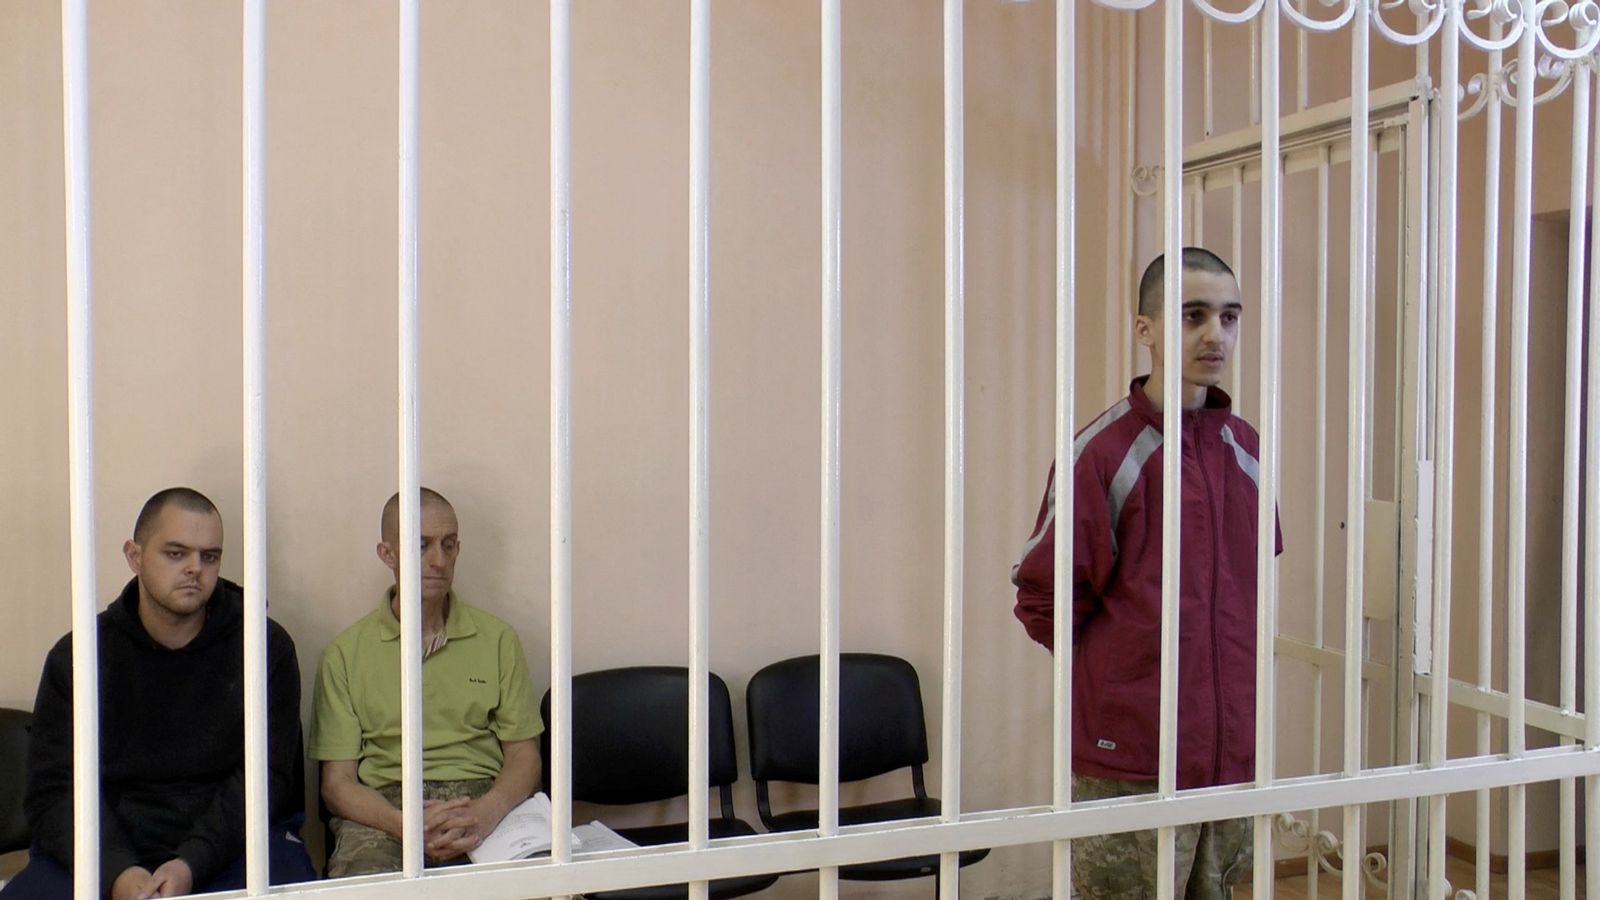 البريطانيان إيدن أسلين وشون بينر والمغربي إبراهيم سعدون خلال محاكمتهم في دونيتسك - 8 يونيو 2022 - REUTERS